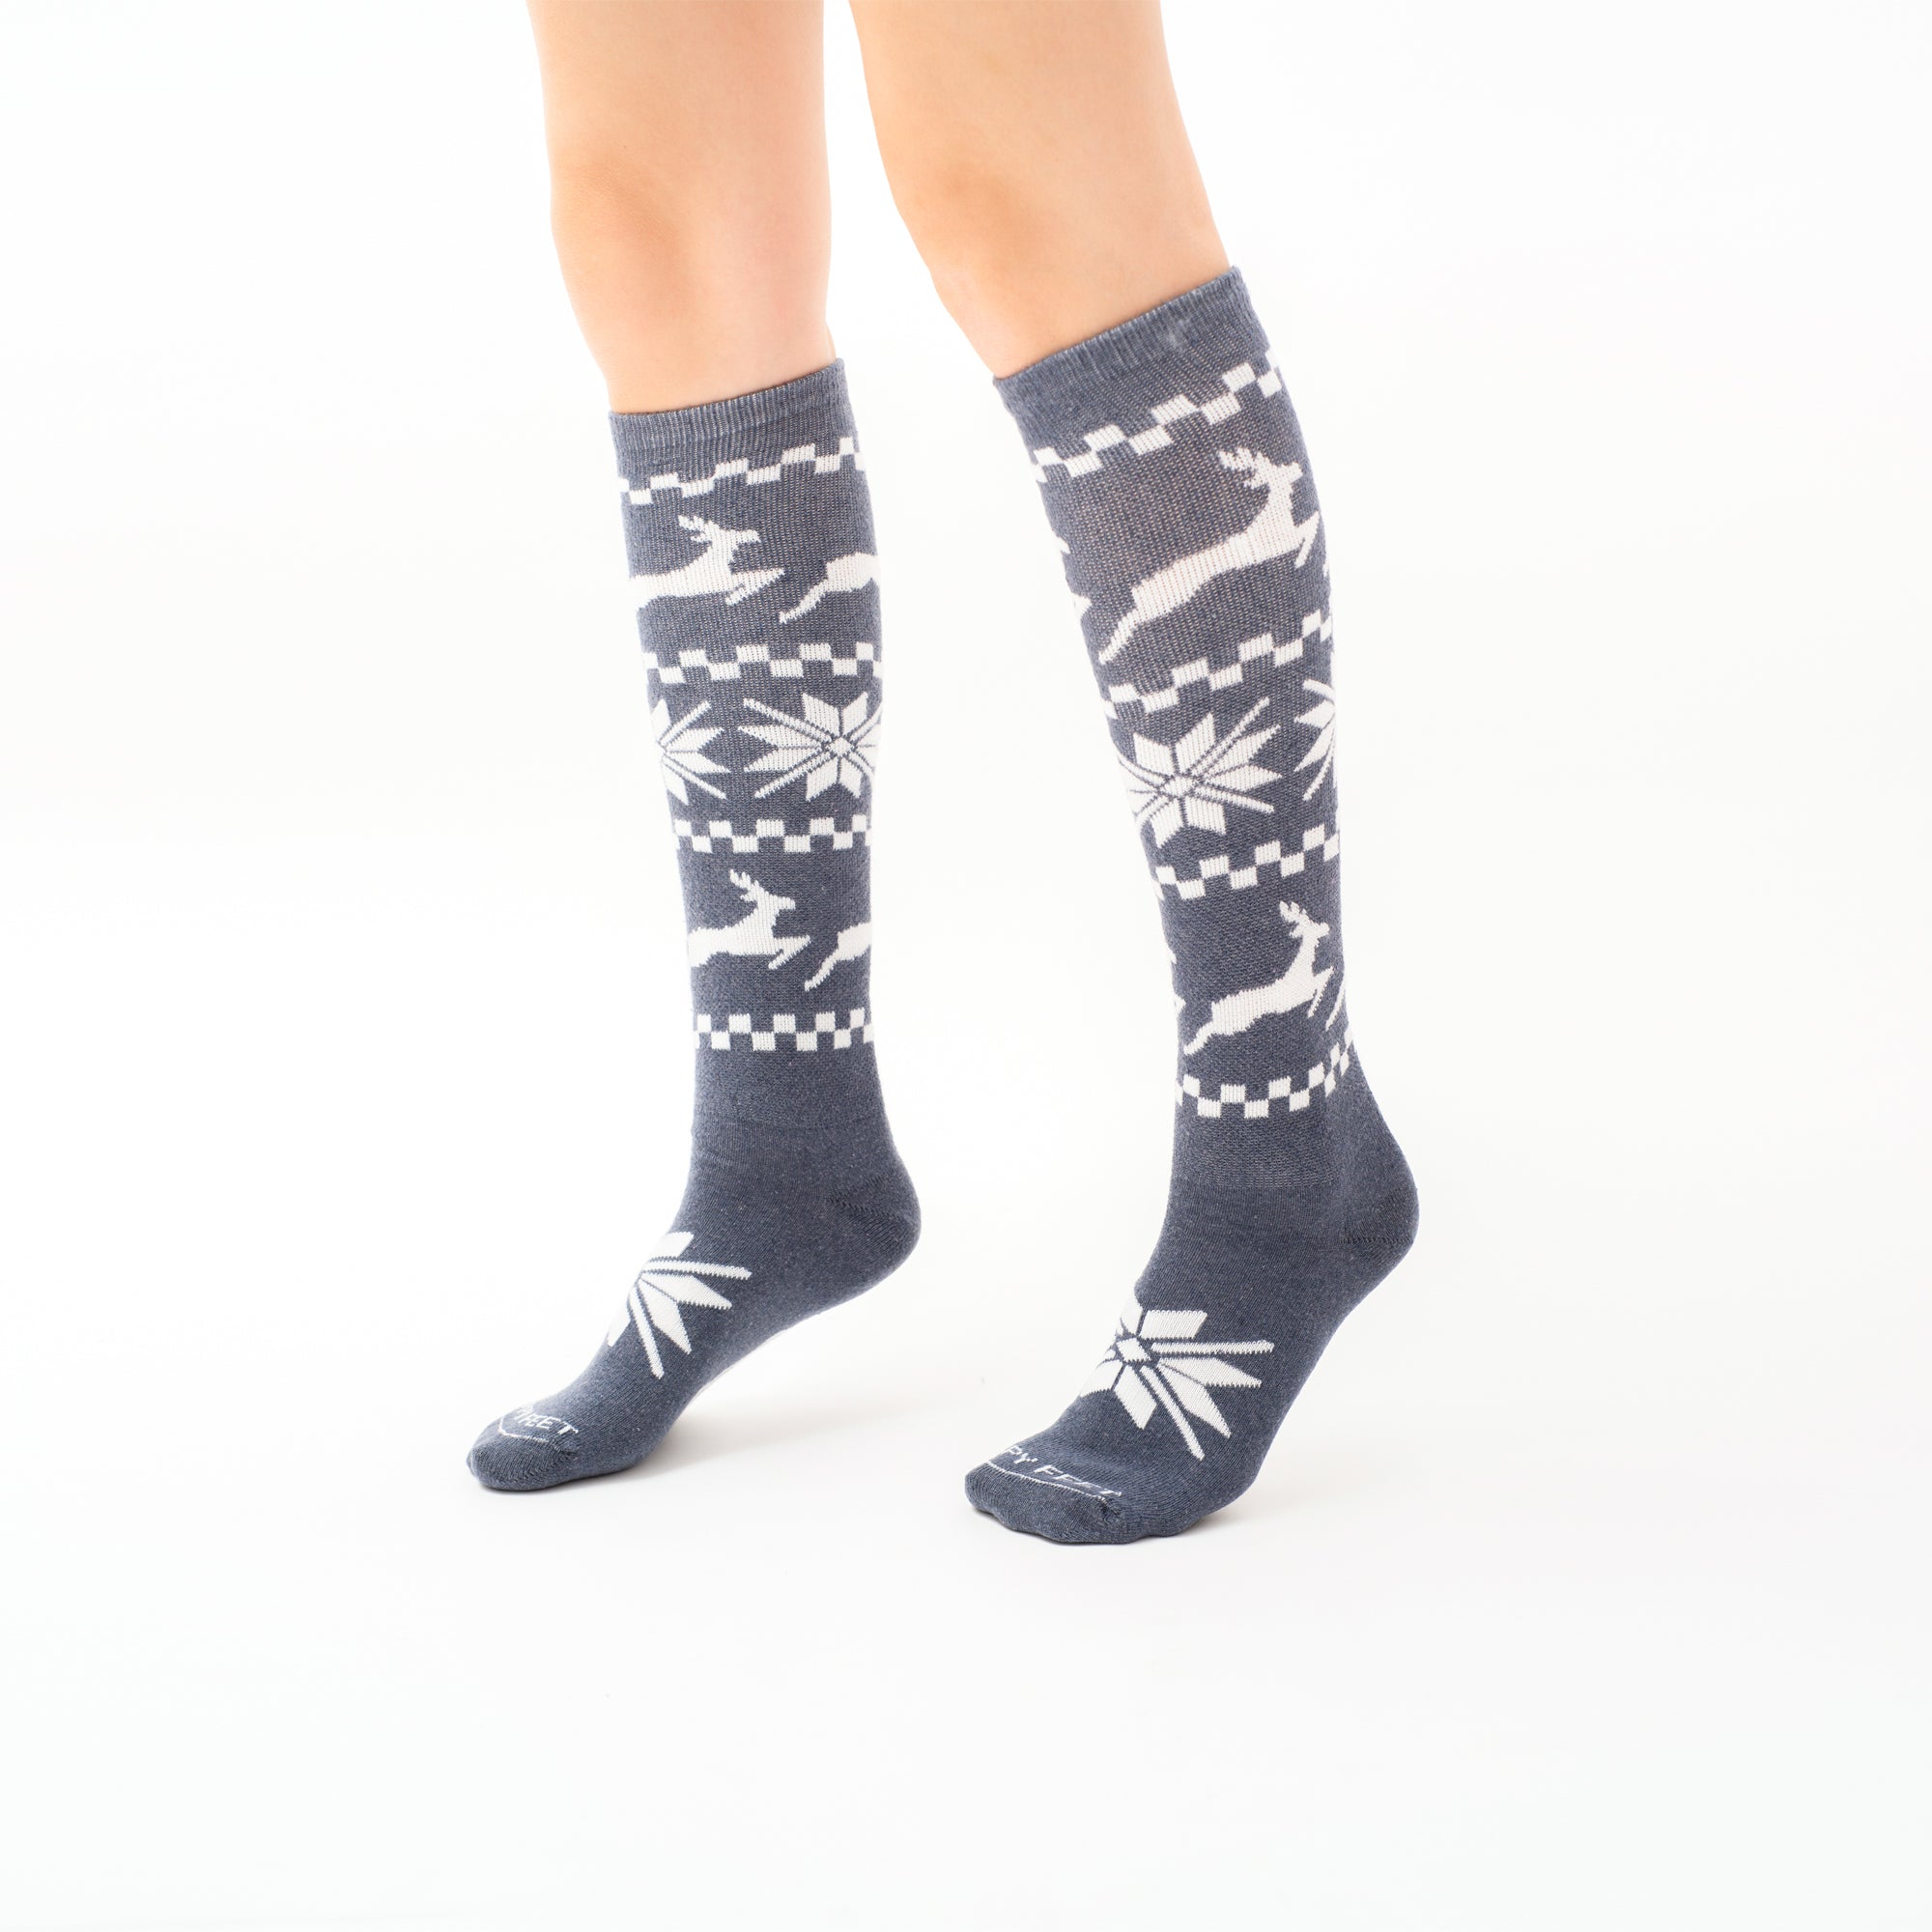 Nordic Reindeer socks